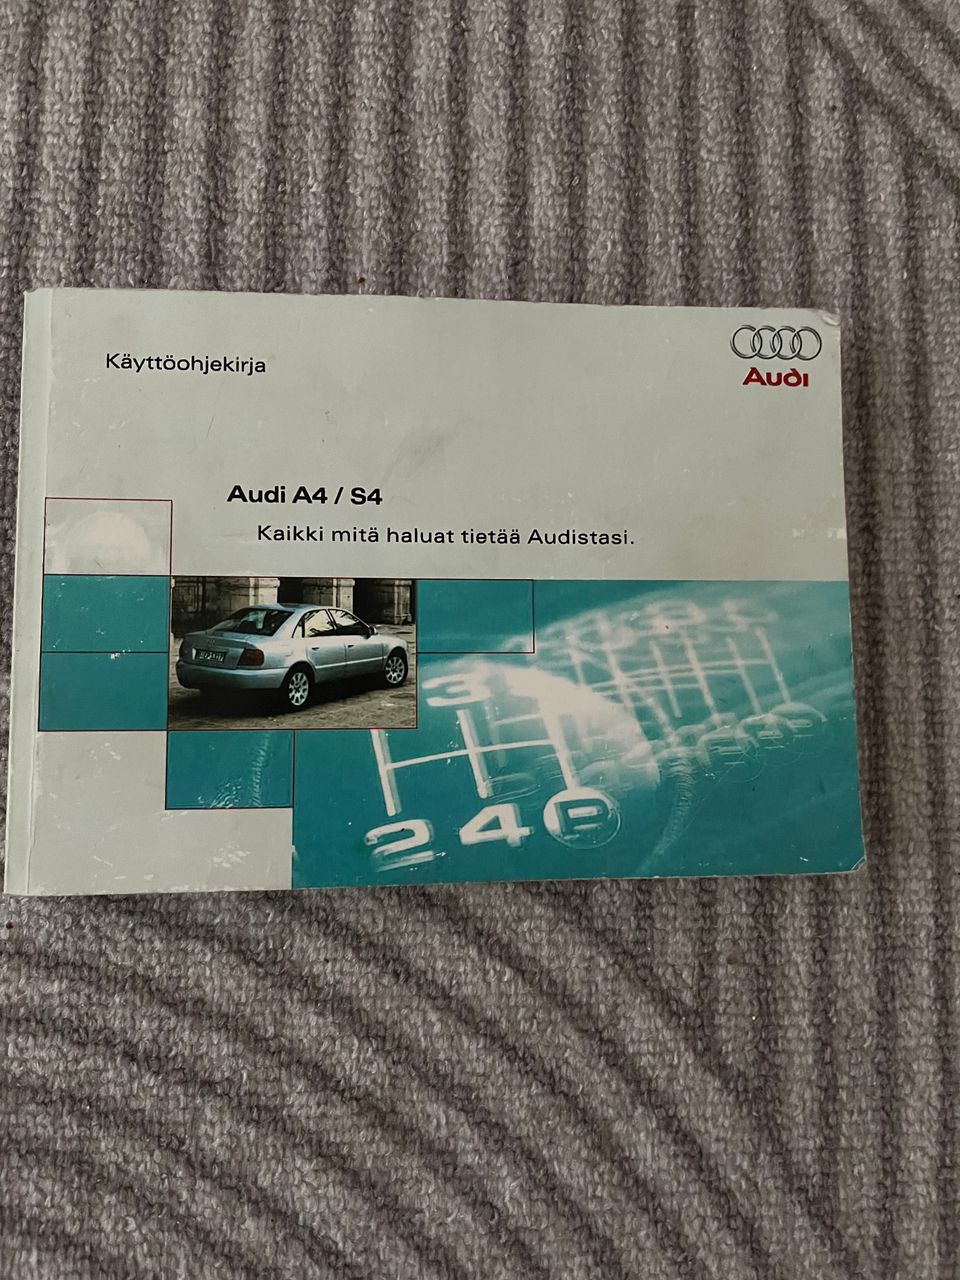 Audi B5 käyttöohjekirja